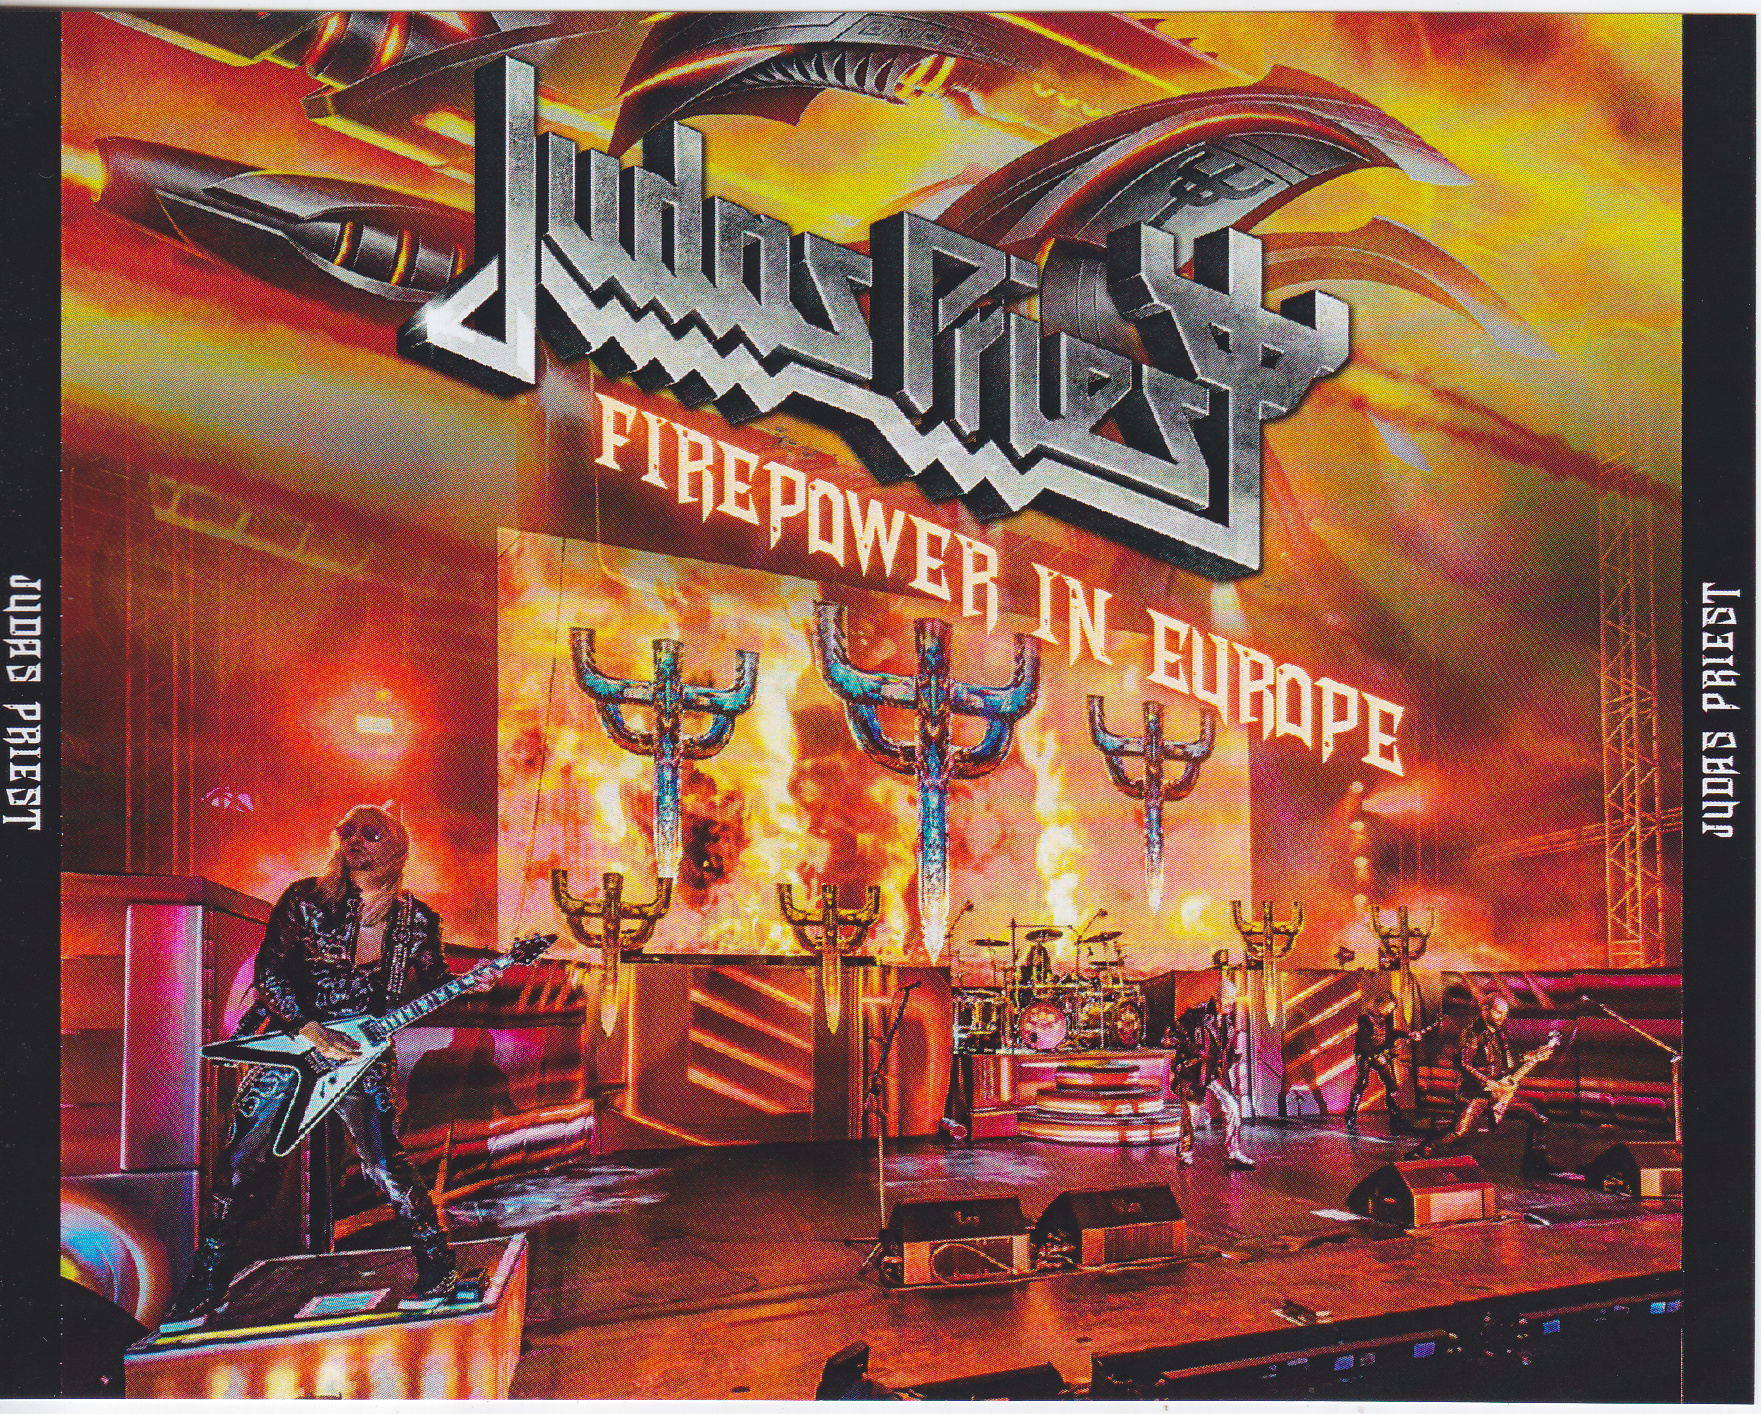 Judas Priest / Firepower In Europe / 2CDR+1DVDR – GiGinJapan